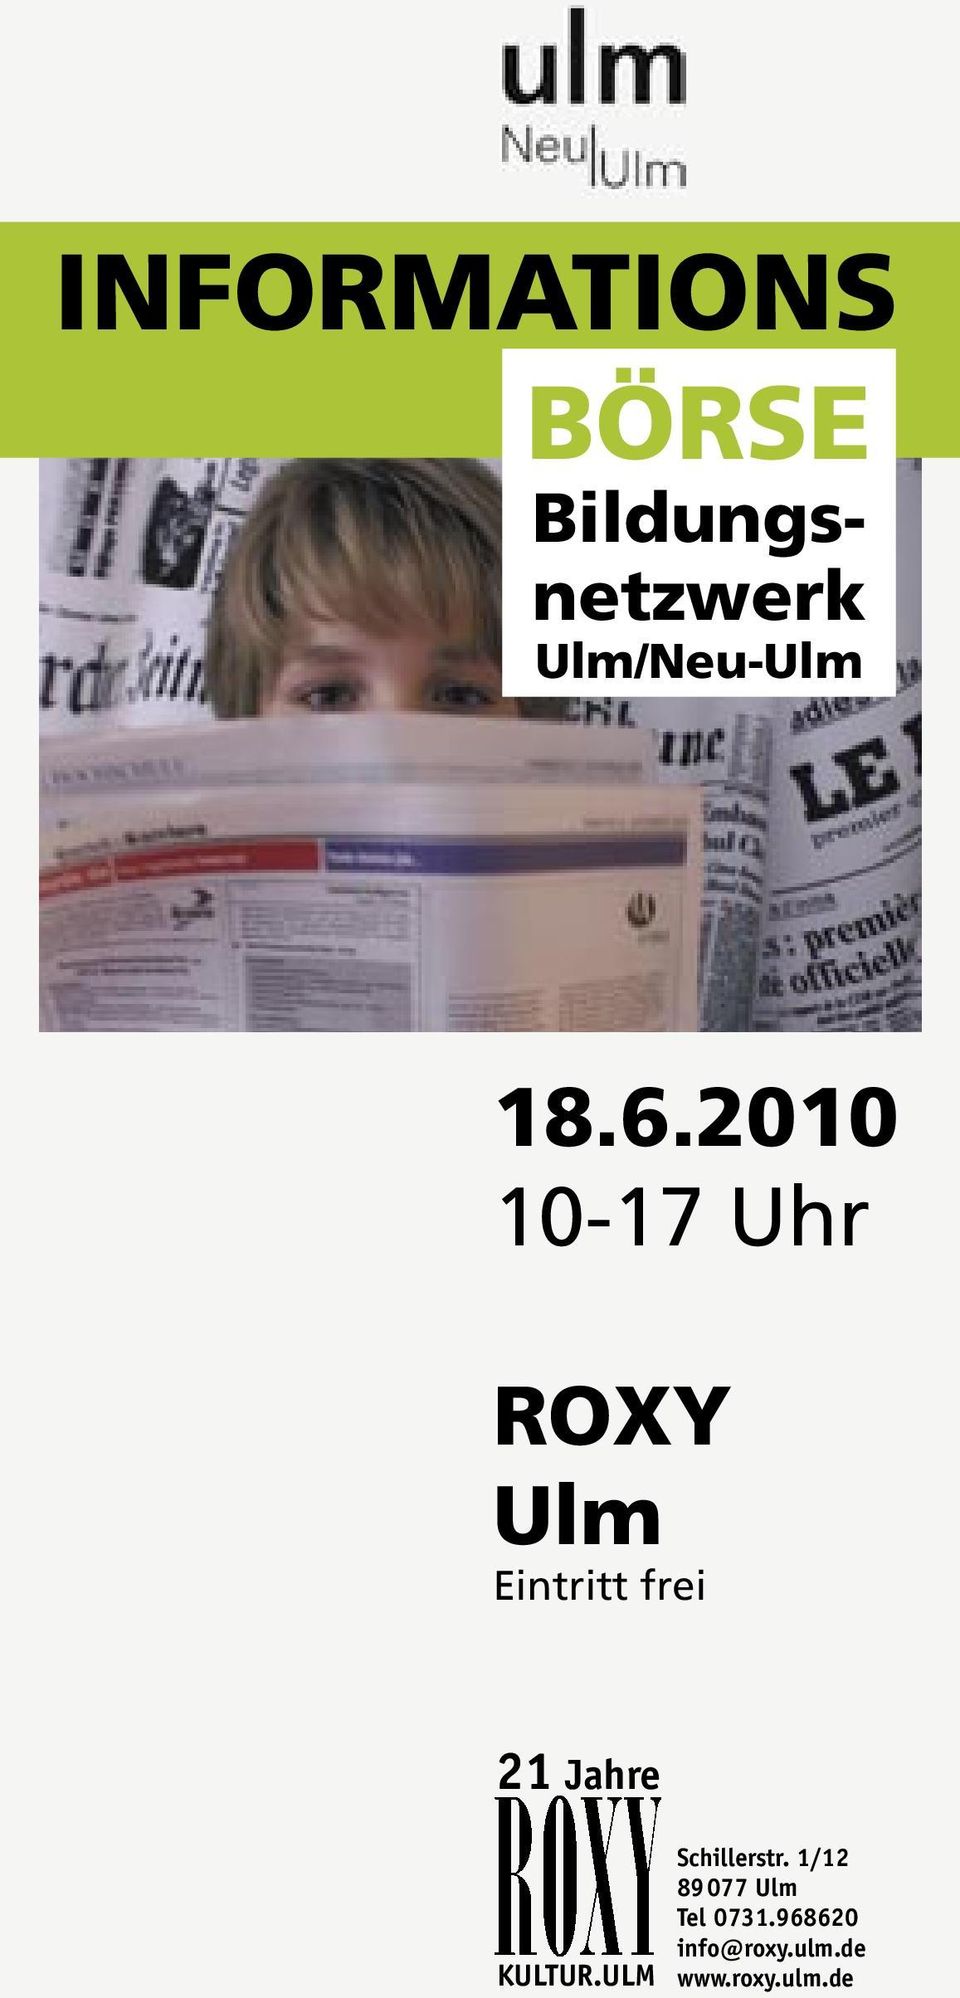 2010 10-17 Uhr ROXY Ulm Eintritt frei 21